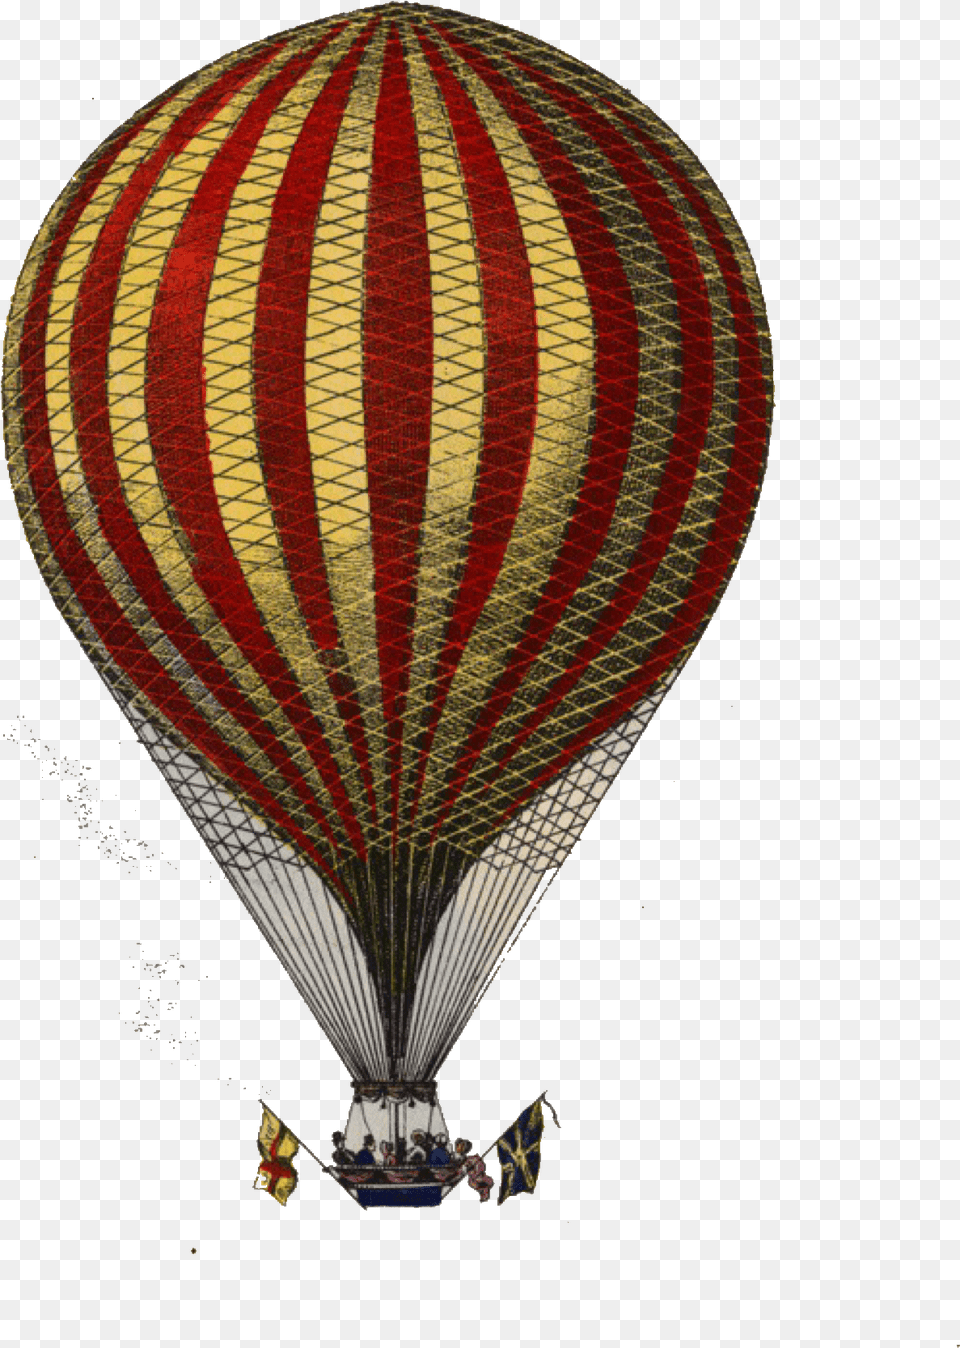 Old Hot Air Balloon, Aircraft, Hot Air Balloon, Transportation, Vehicle Png Image